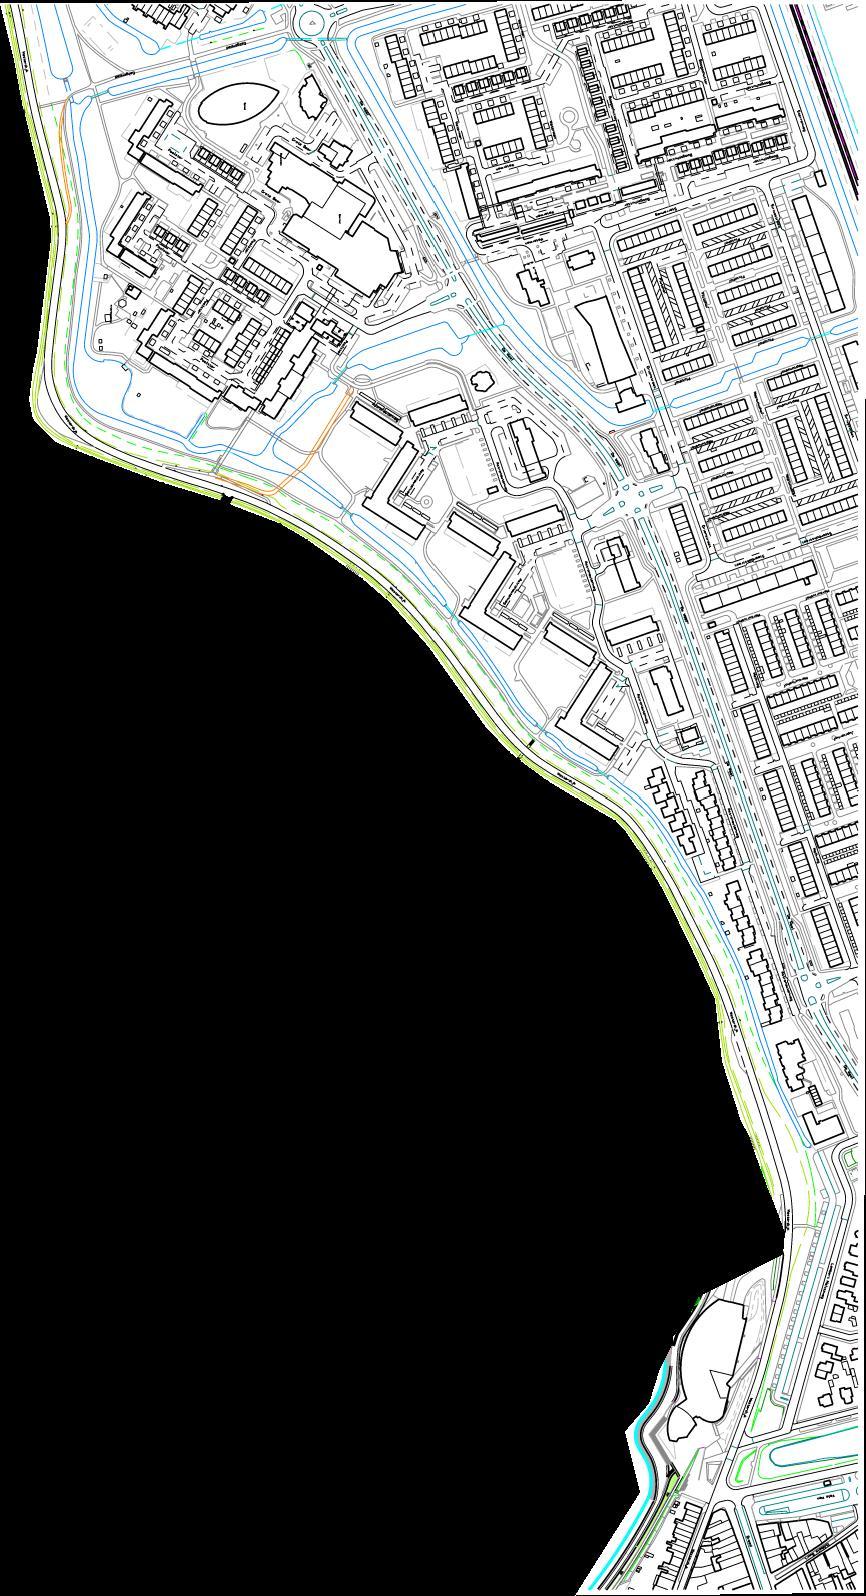 weergave van geprojecteerde stadsstrand te Hoorn, alsmede de